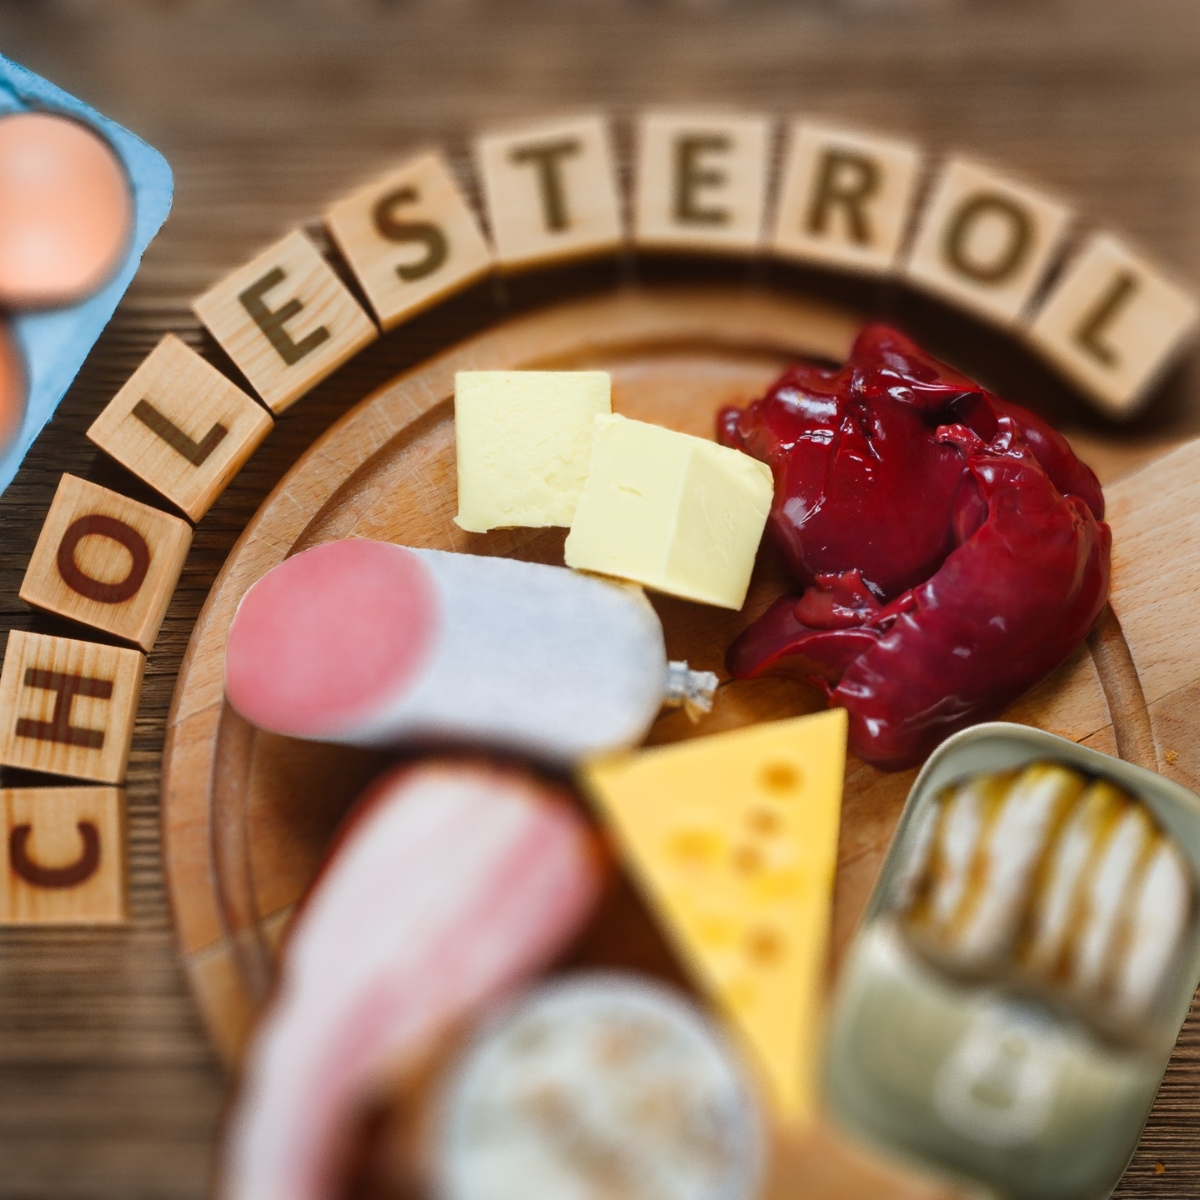 Тарелка с продуктами с высоким содержанием холестерина, рядом с которой написано слово